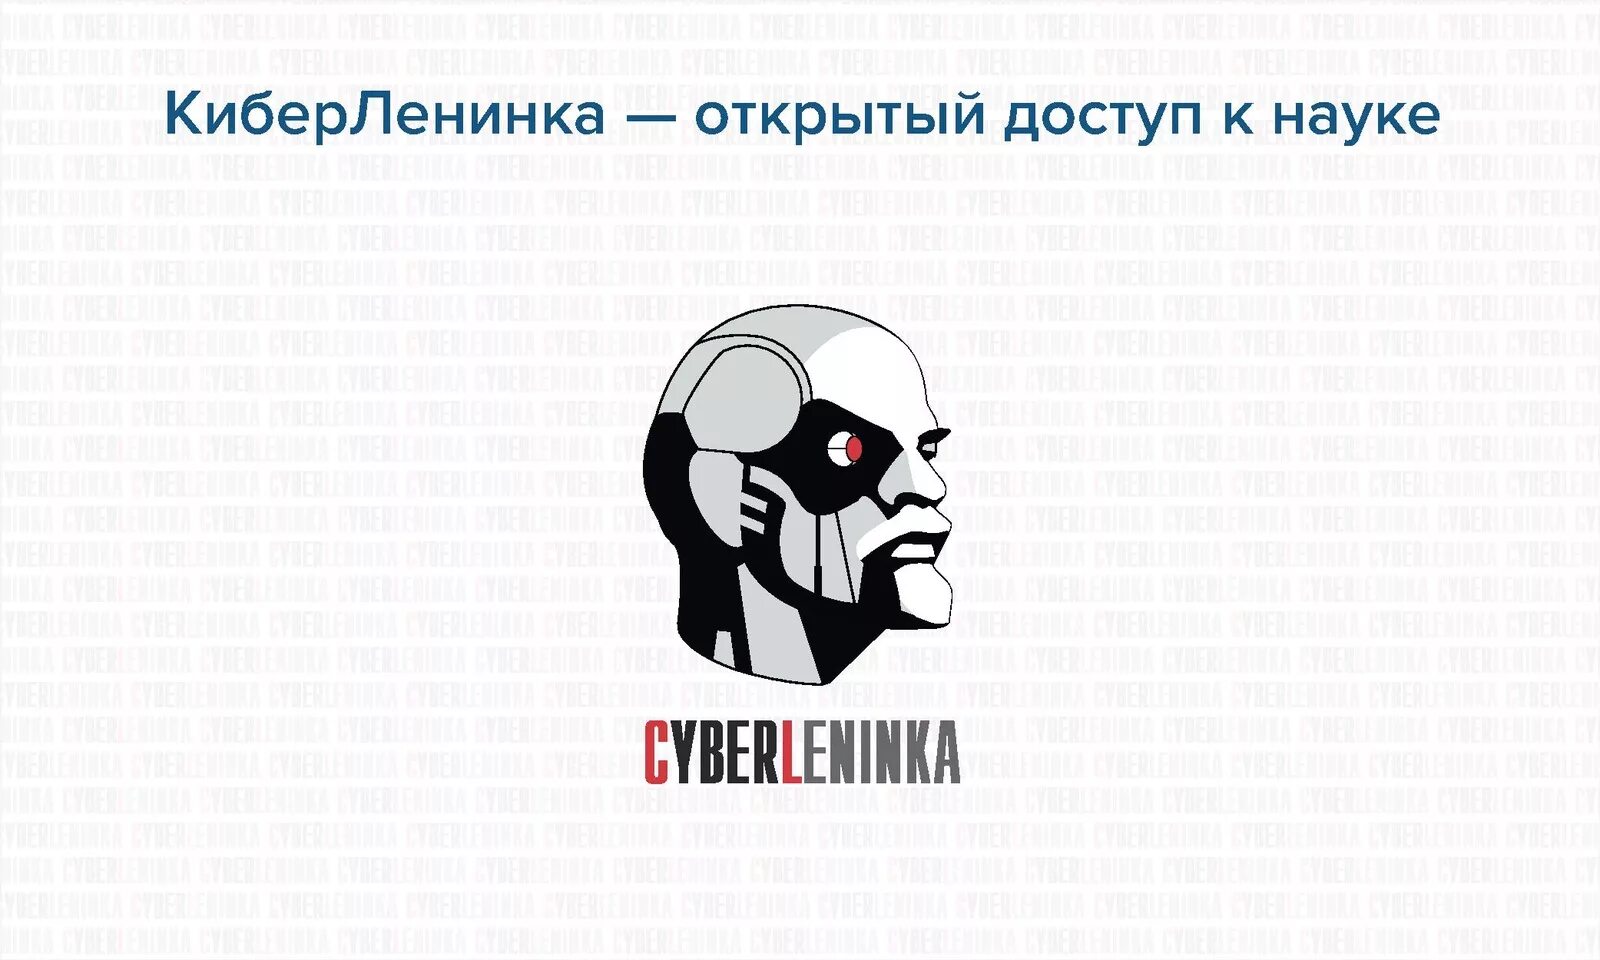 Научная электронная библиотека киберленинка cyberleninka ru. КИБЕРЛЕНИНКА. КИБЕРЛЕНИНКА научная электронная библиотека. КИБЕРЛЕНИНКА картинки. КИБЕРЛЕНИНКА эмблема.